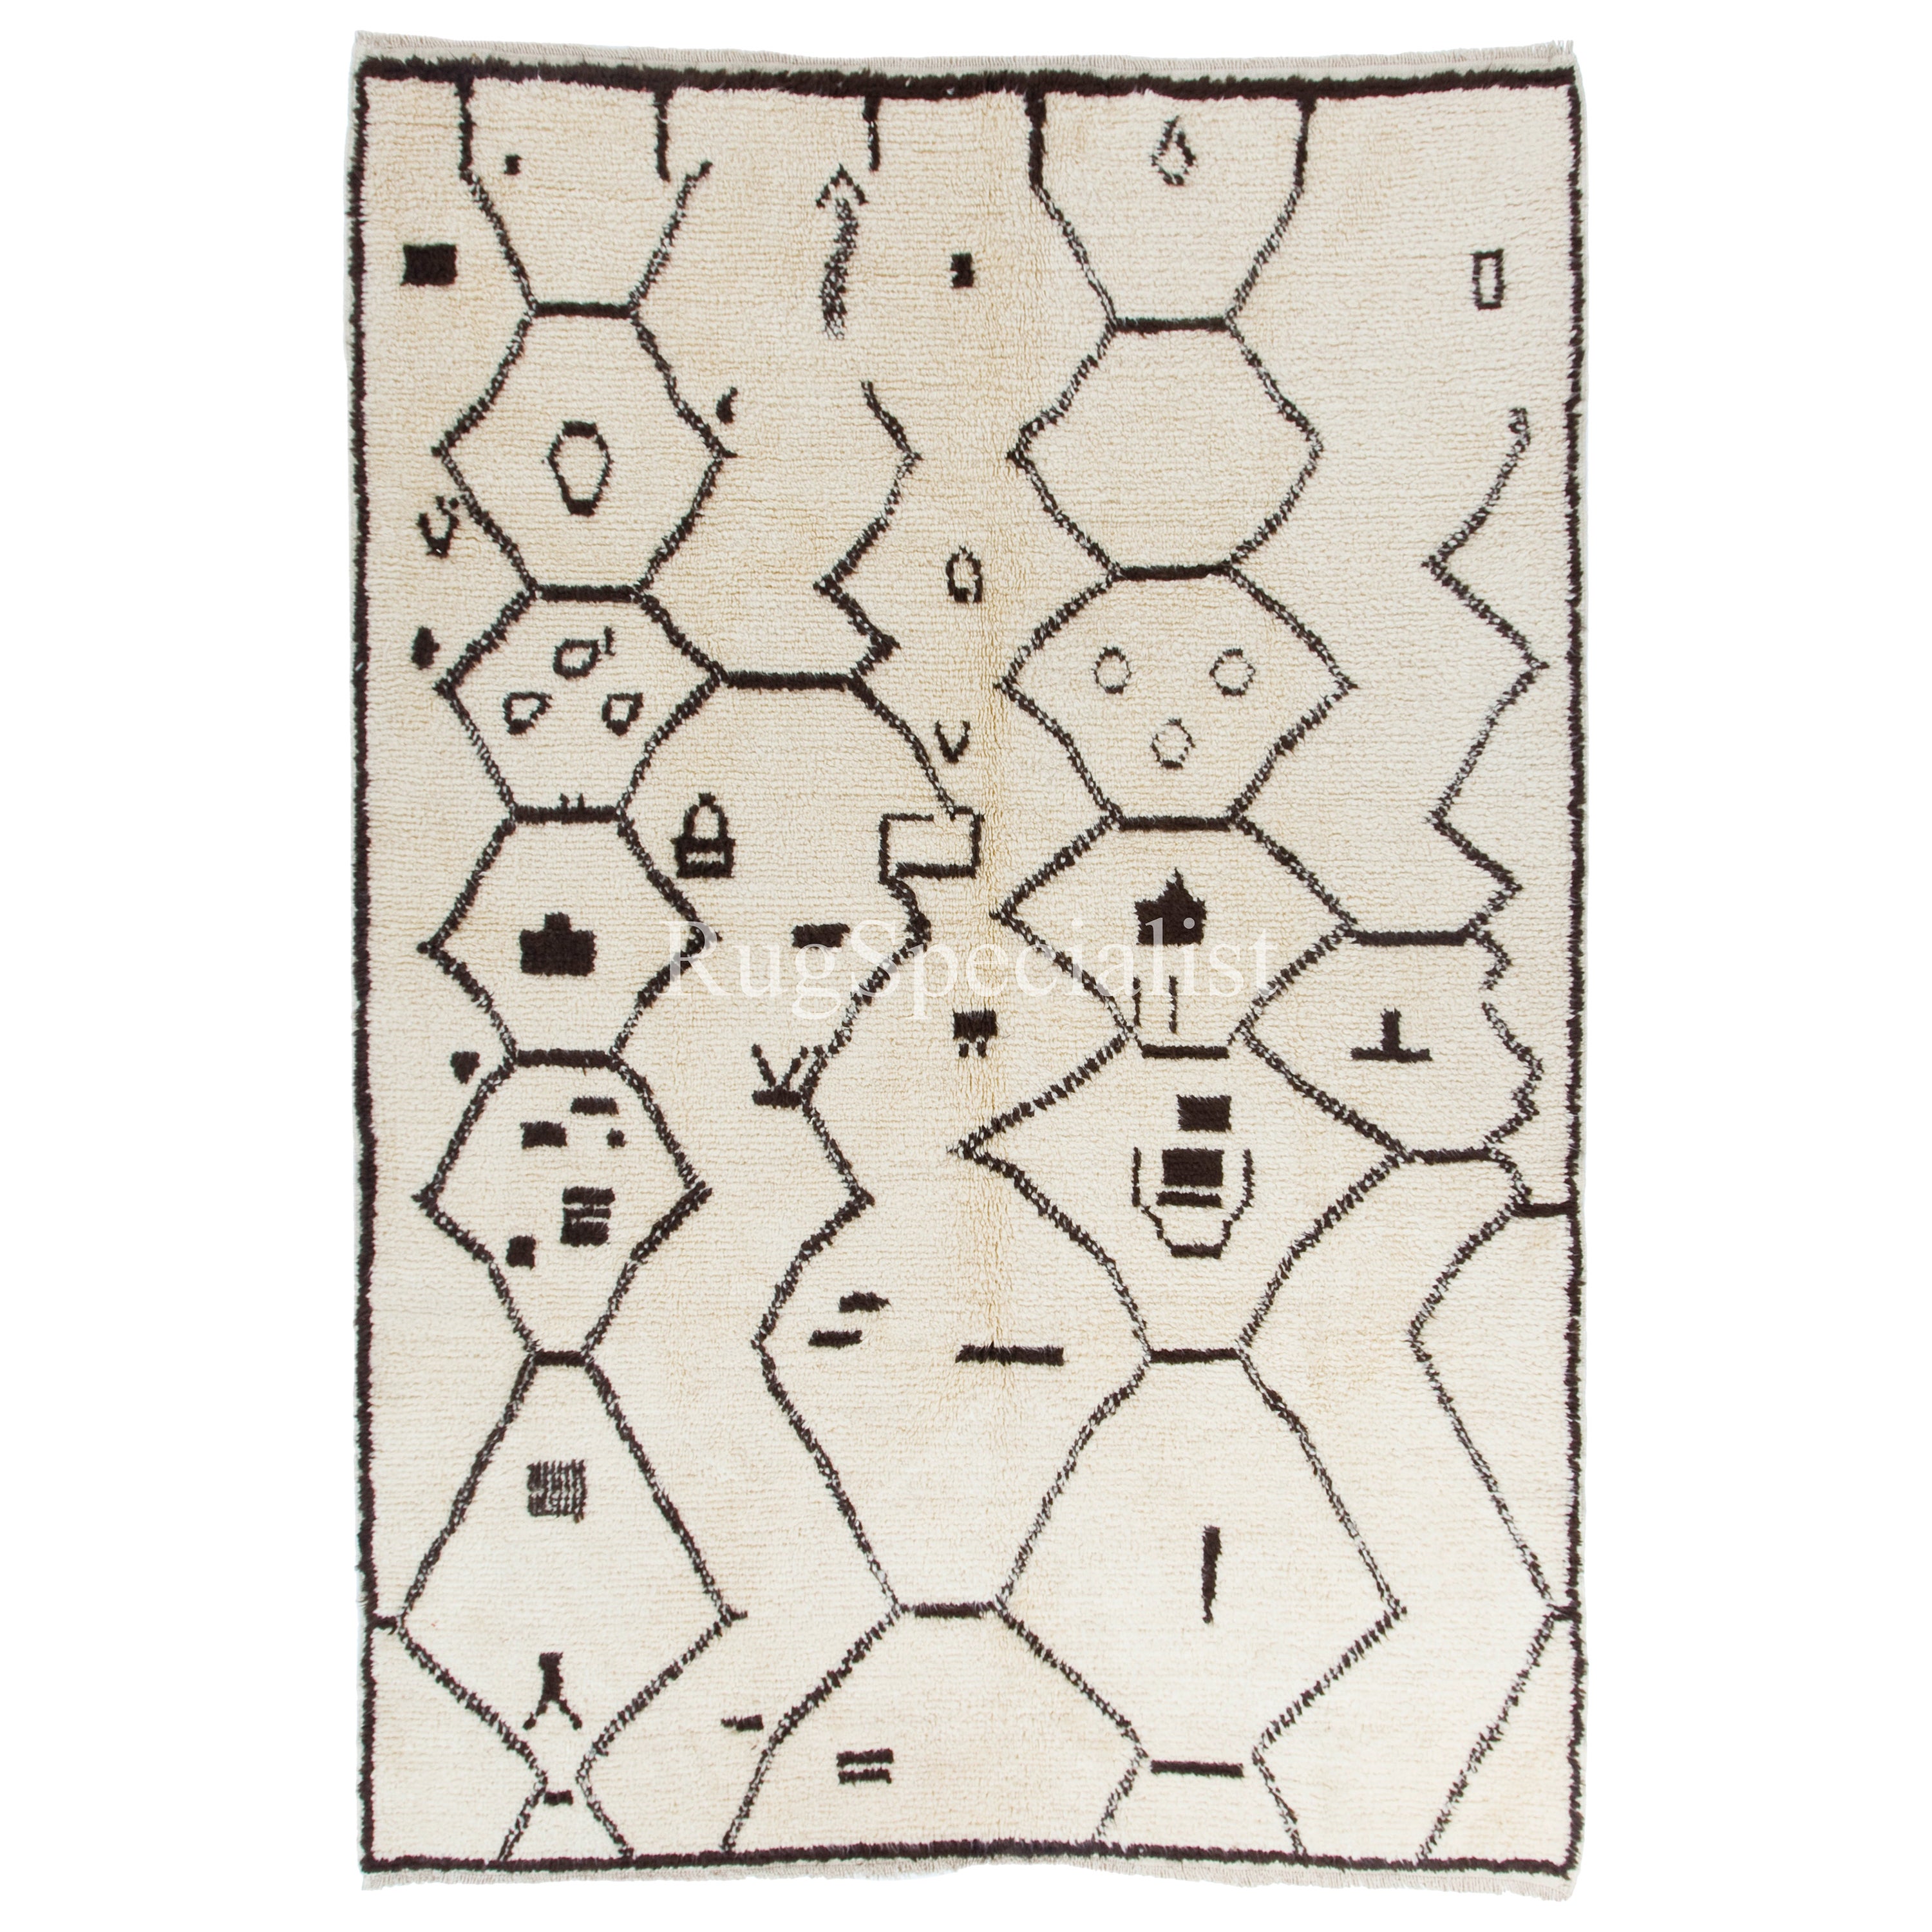 Moroccan Rug. 100% Natural Wool. Beni Ourain Berber Carpet in Ivory & Dark Brown